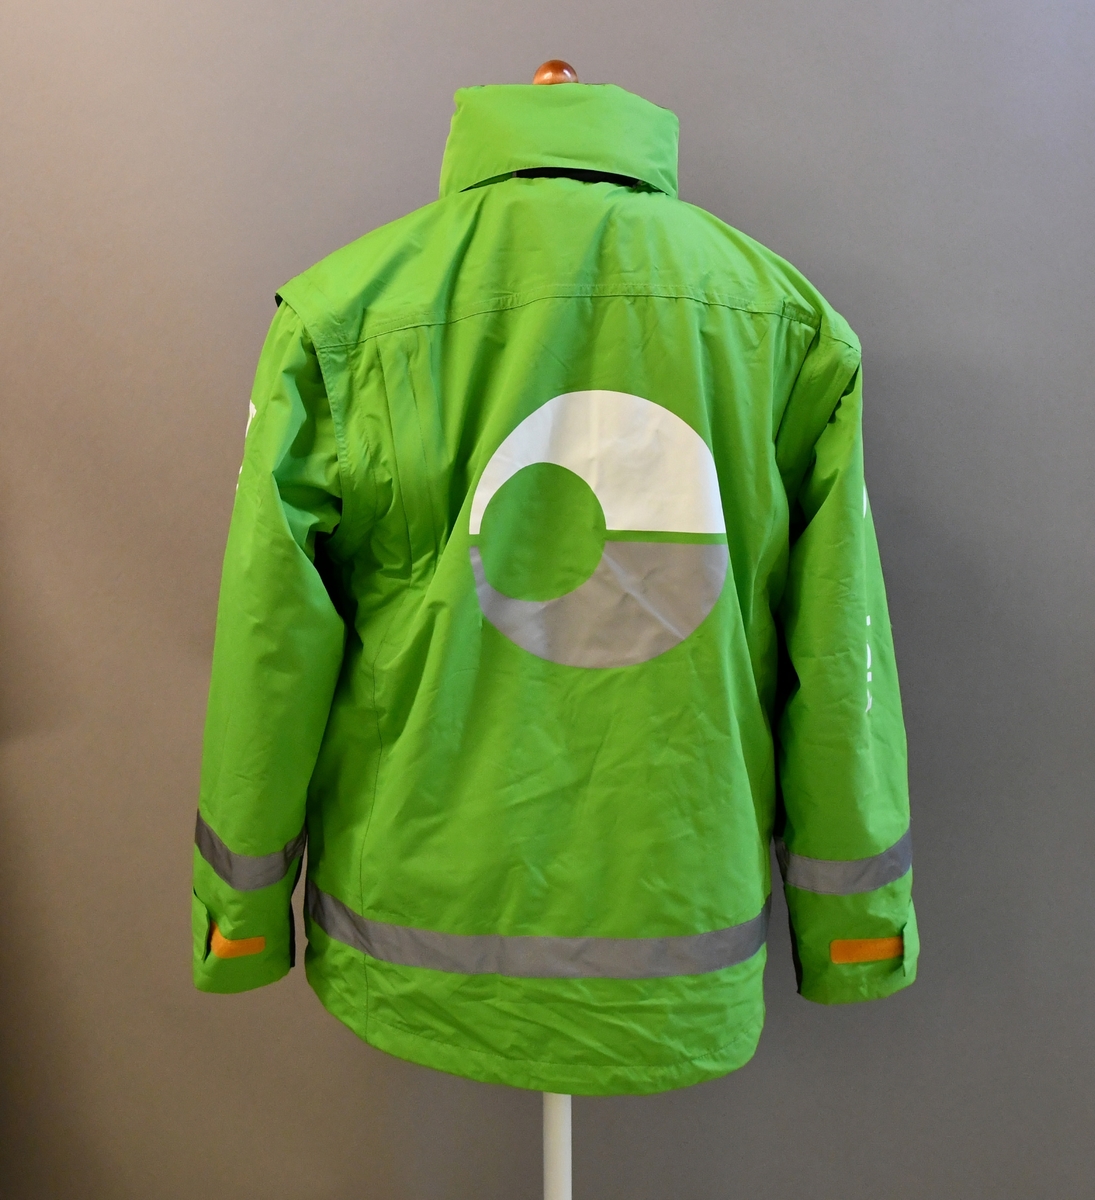 Grønn uniformsjakke med tekst og Bringemblem. Med hette og avtagbart for. Med 4 lommer og mobillomme. Refleksbånd i livet og på ermene.

Størrelse S